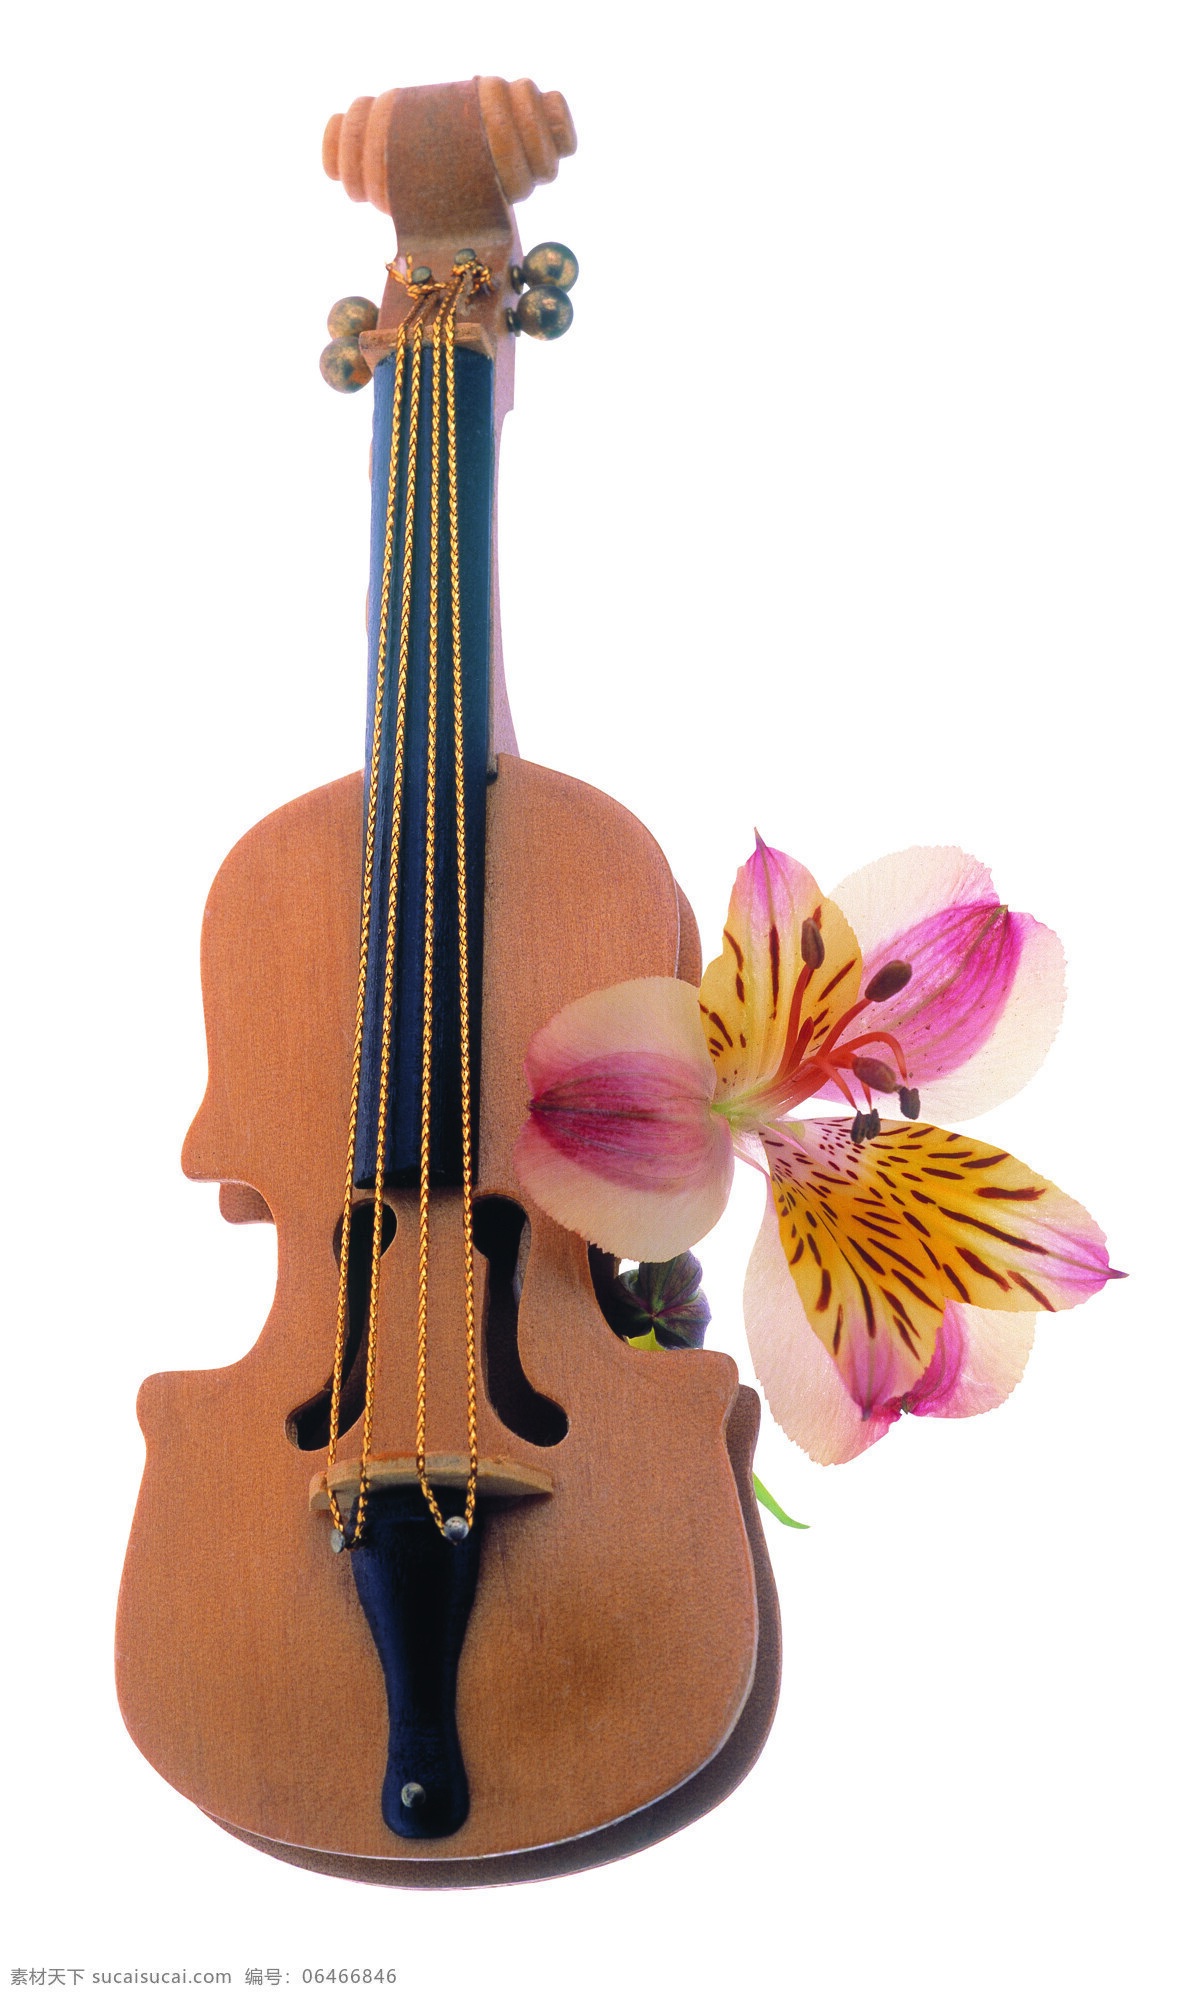 音乐时光 鲜花 乐器 手提琴 音乐 美好回忆 文化艺术